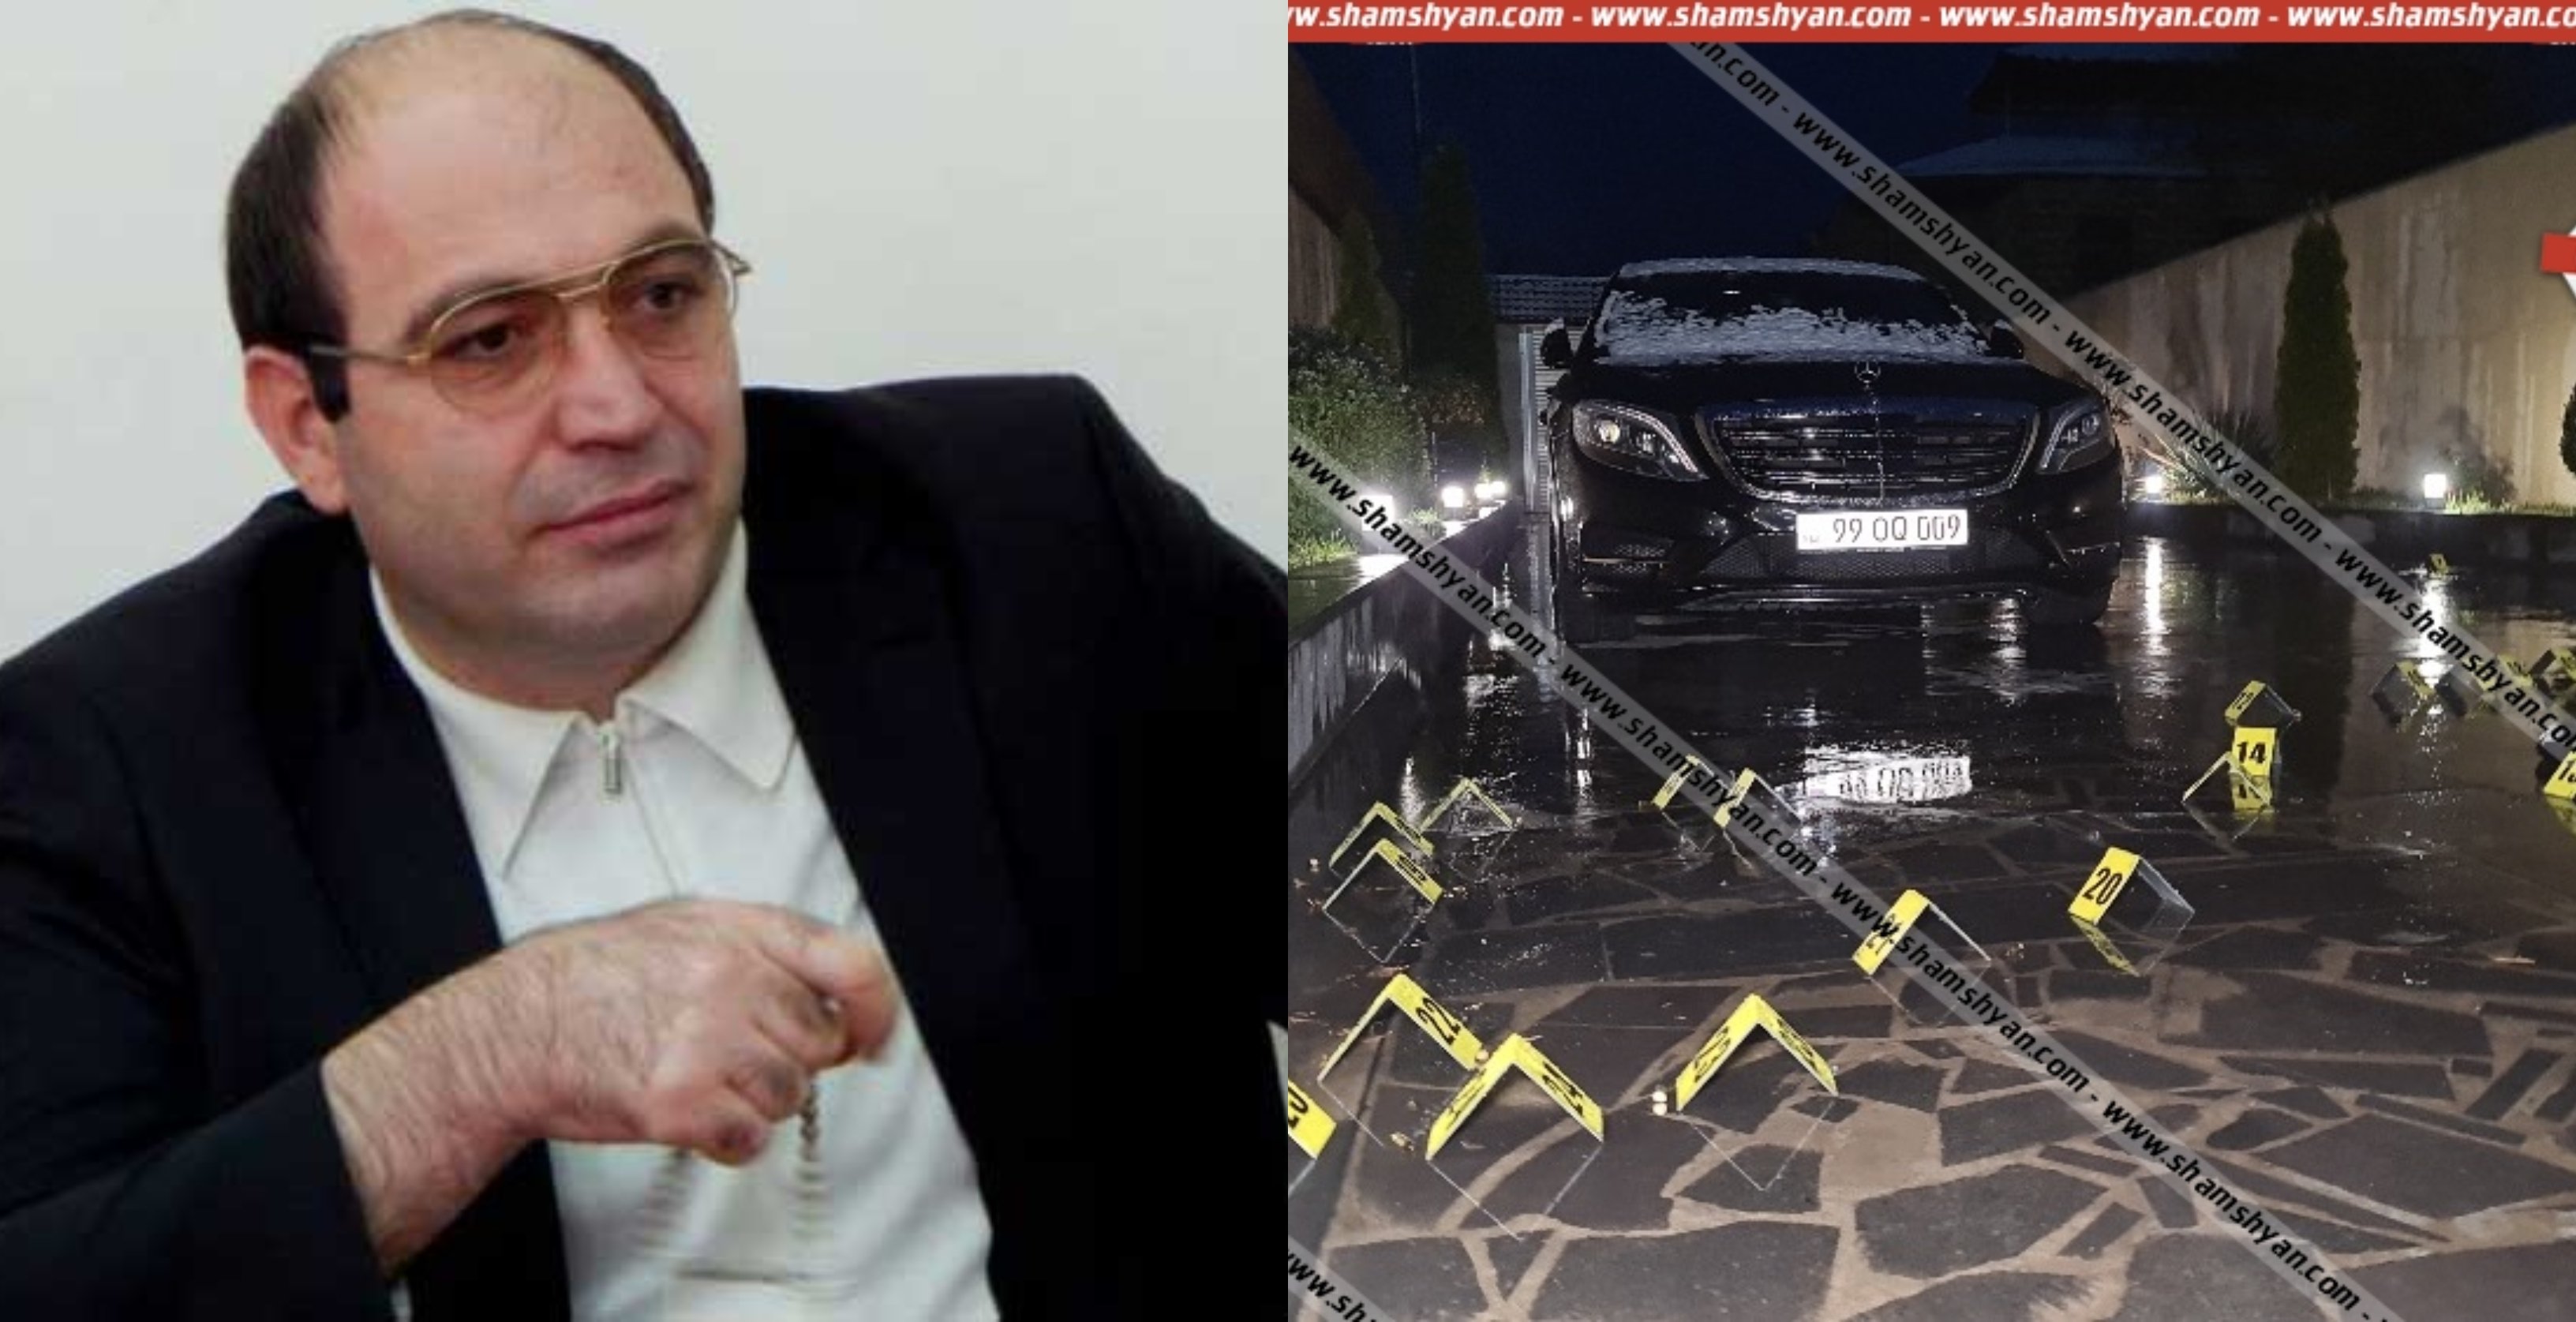 Գիշերը Երևանում սպանվել է 4 հոգի, այդ թվում՝ հայտնի քրեական հեղինակություն «Քանաքեռցի Տույը»․ կասկածվում է ՀՀԿ-ական նախկին պատգամավորի որդին